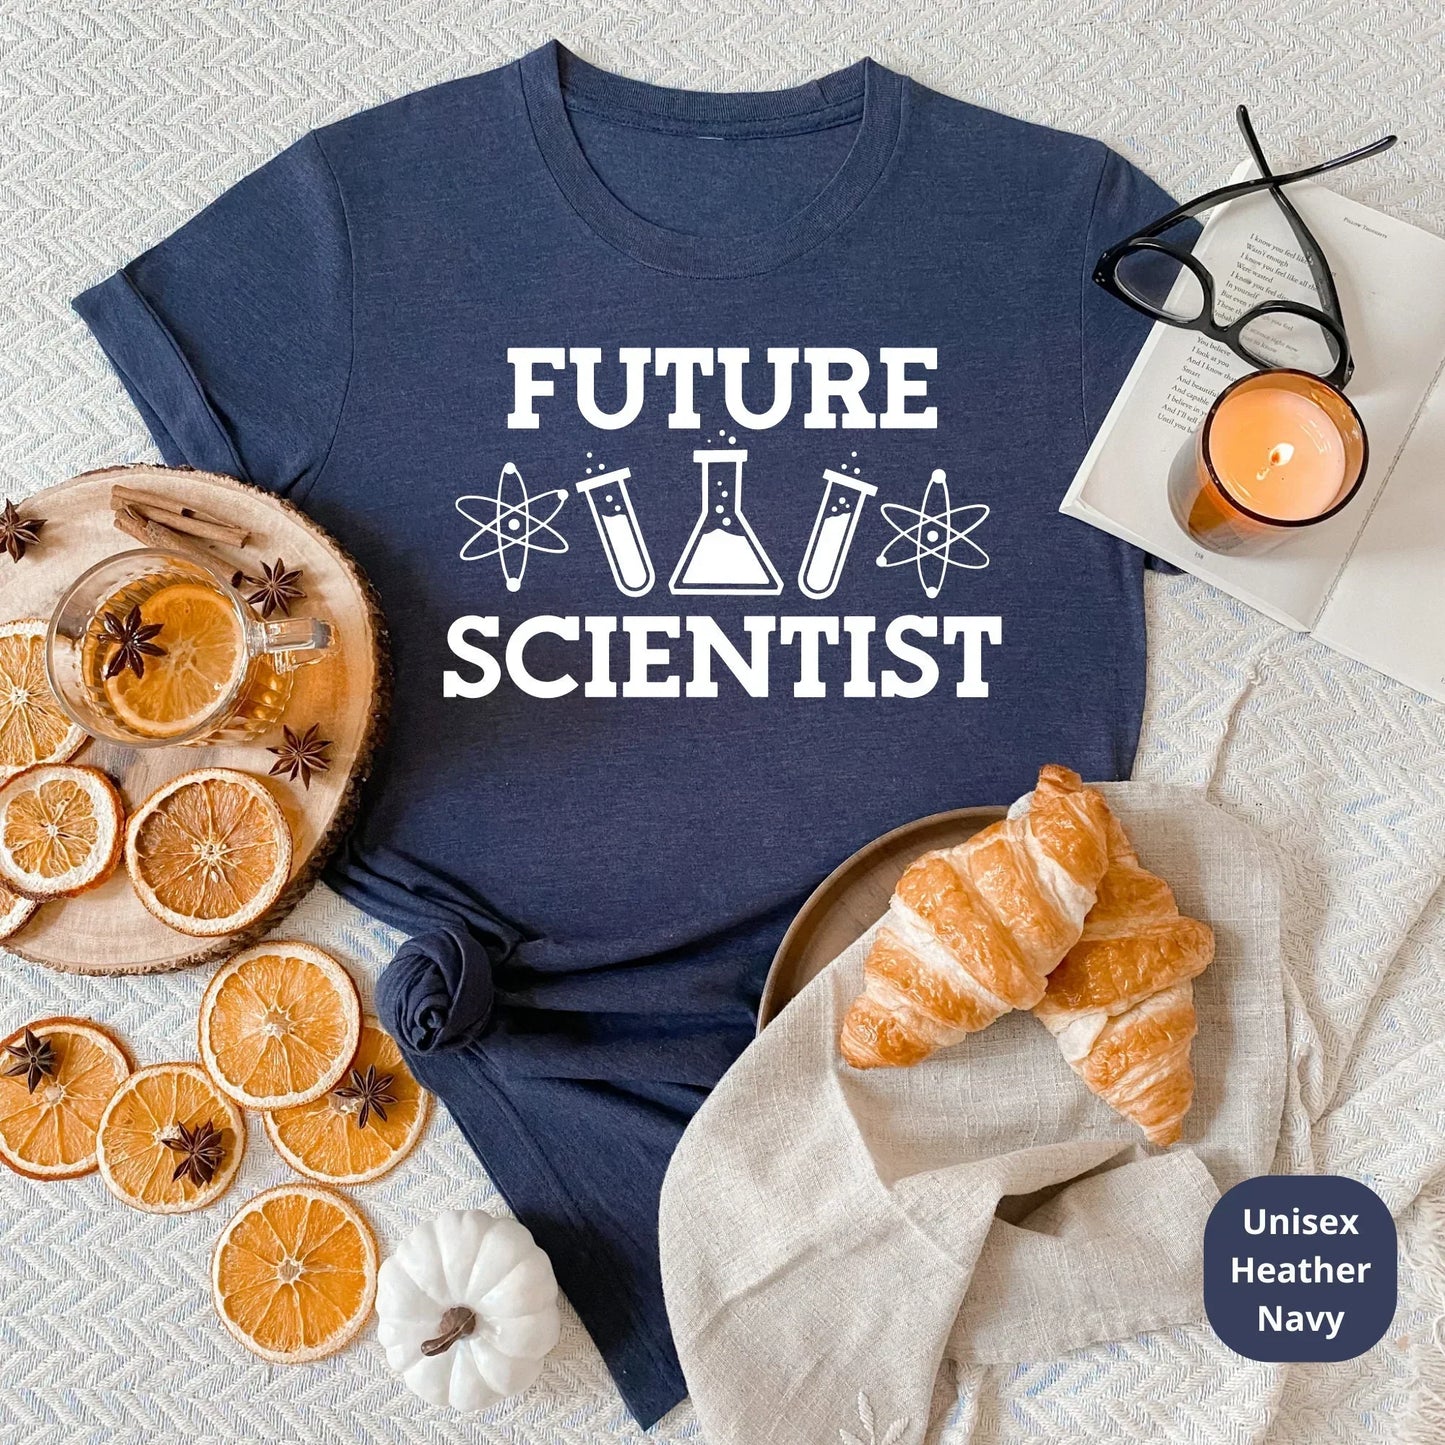 Science Teacher Shirt, Science Grad Shirt, Teacher Sweatshirt, Gift for Teacher Elements Teacher Shirt, Funny Chemistry Teacher Shirt HMDesignStudioUS